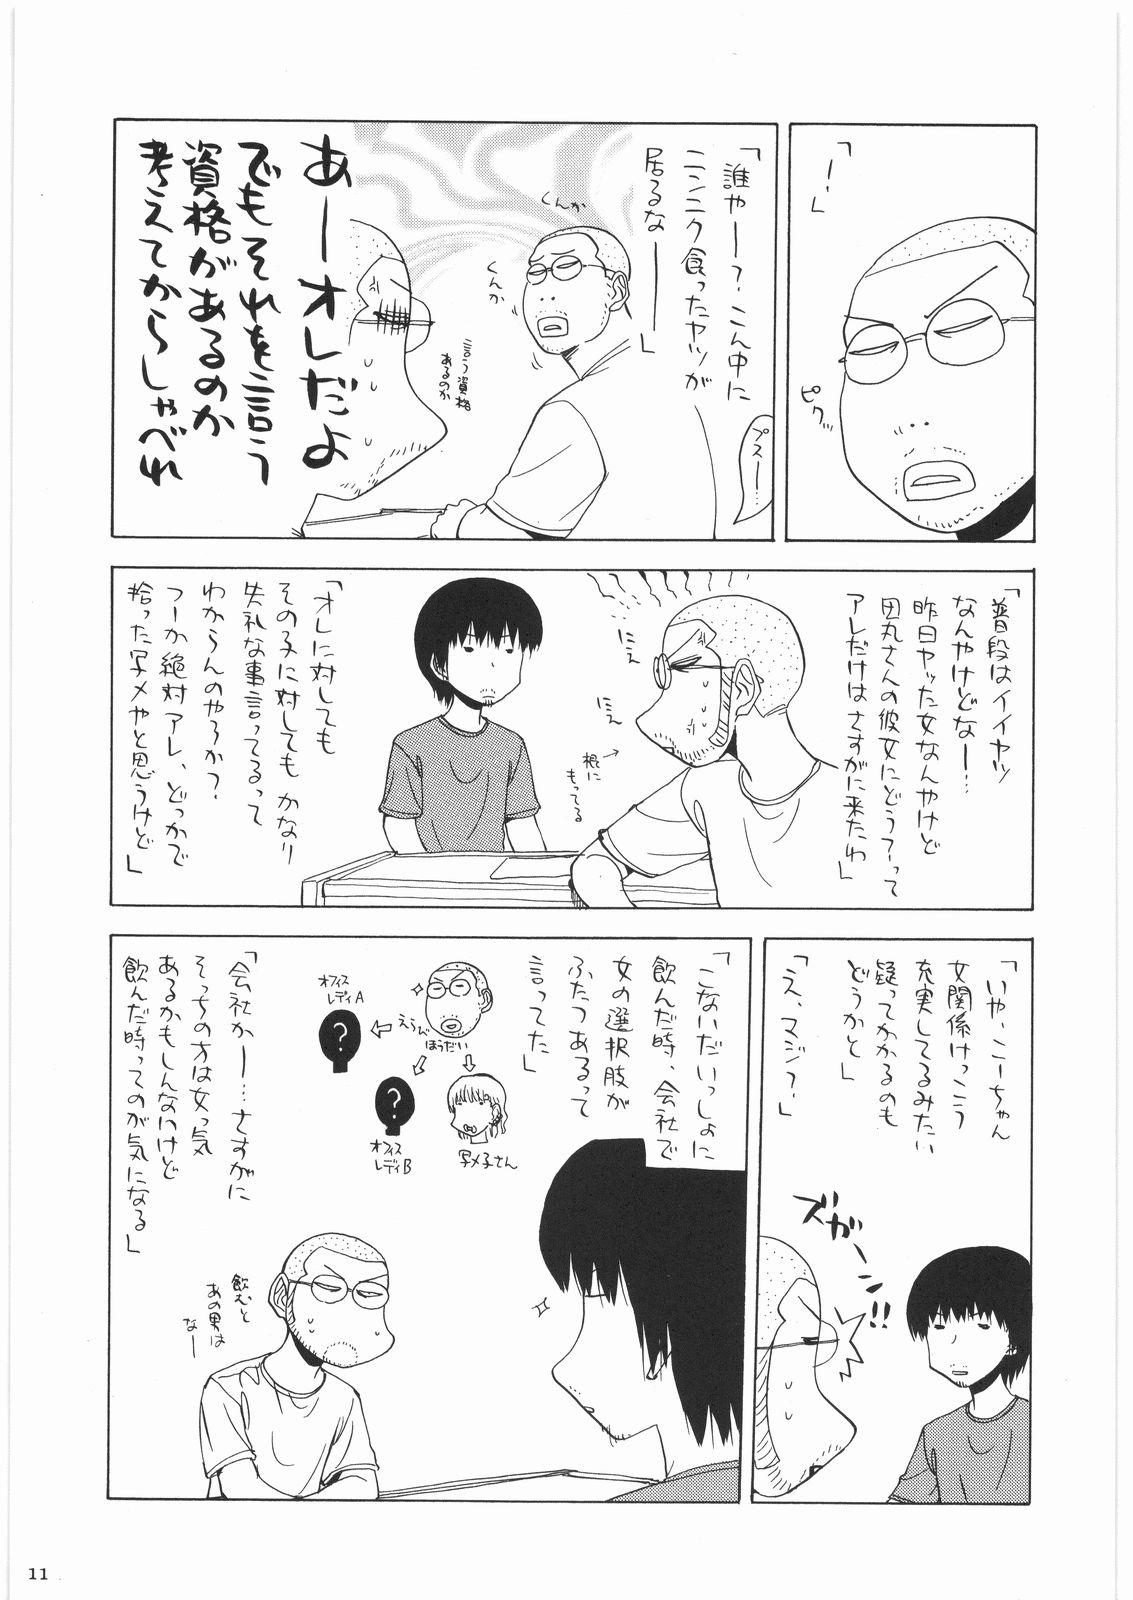 Sub Oneesama Koushien - K on Monster hunter Umineko no naku koro ni Oil - Page 10